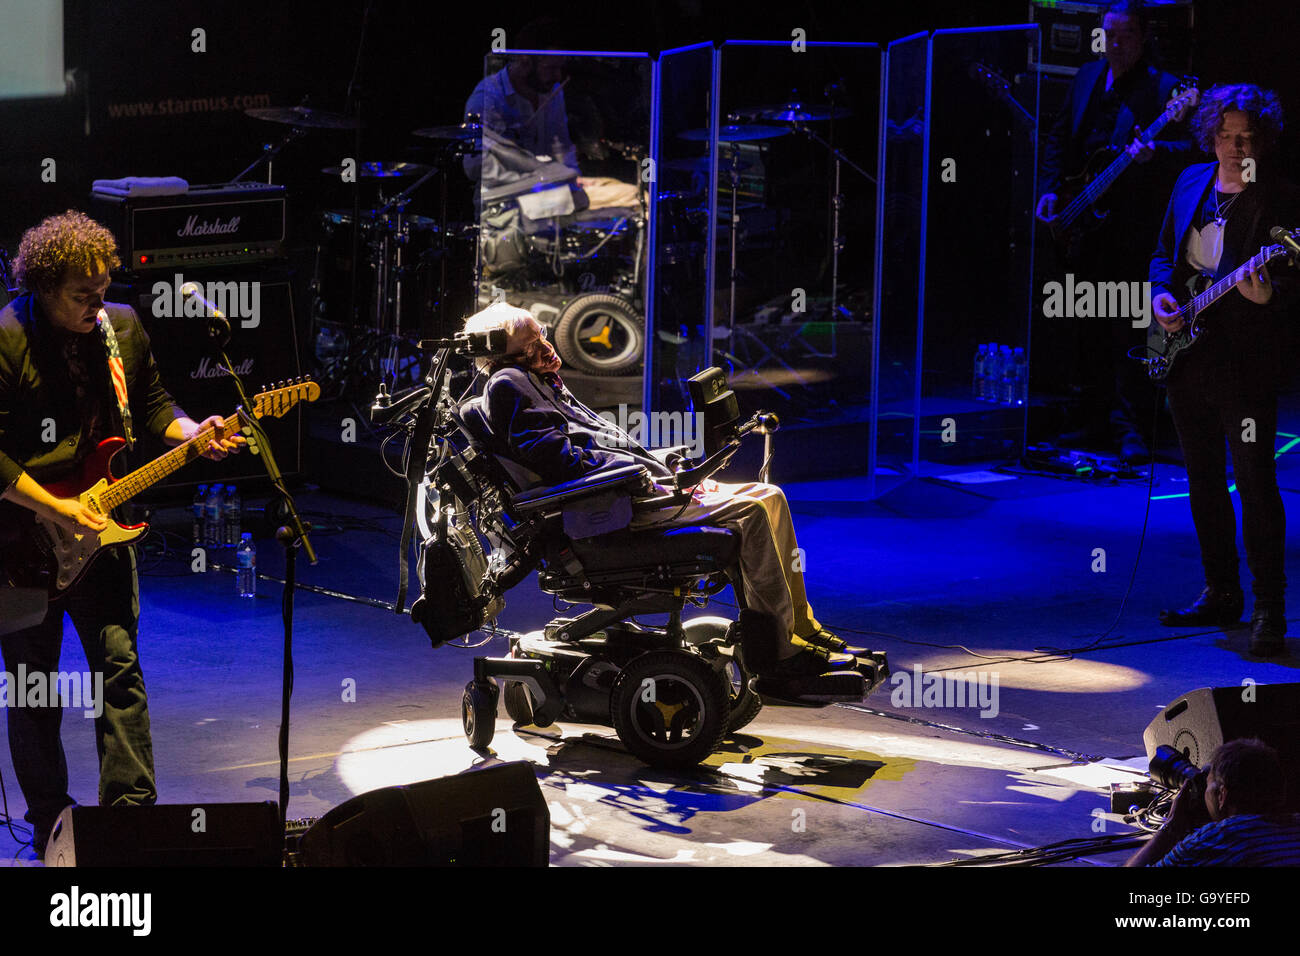 Professor Stephen Hawking auf der Bühne mit der Band Anathema bei der Abschlussveranstaltung des Starmus Festivals, wo sie eine Coverversion von Pink Floyds machten, halten mit Stephens Stimme in den sprechenden Teilen im Gespräch. Im Auditorio Adan Martin in Santa Cruz de Tenerife, Kanarische Inseln, Spanien Stockfoto